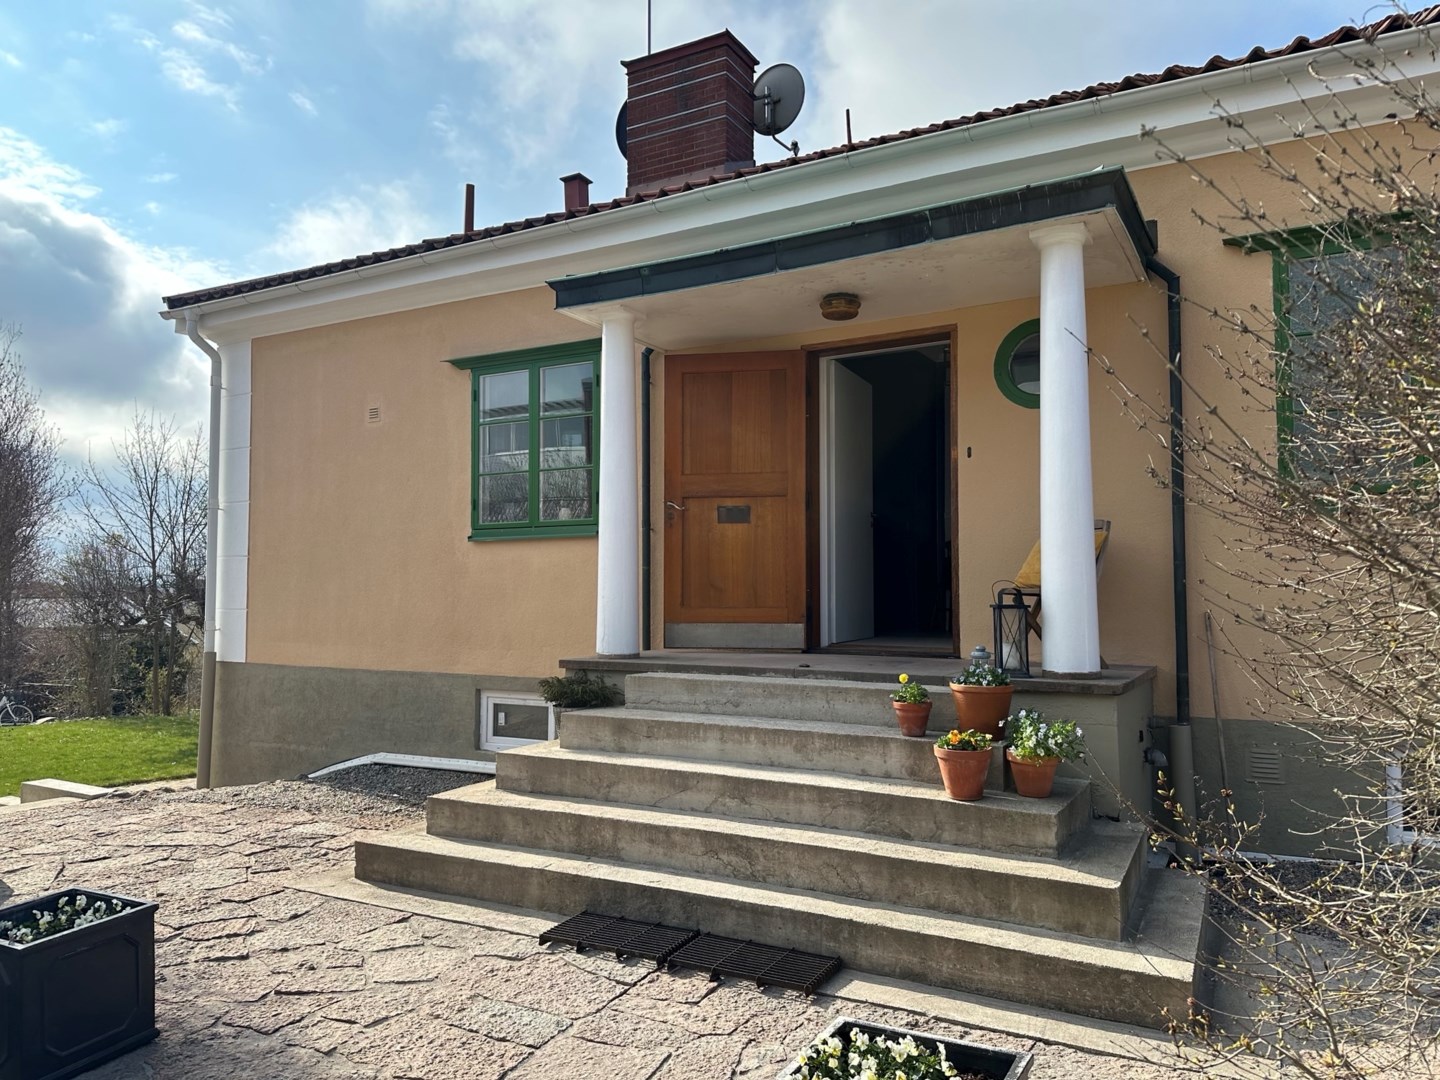 Villa i Centralt Öster, Nyköping, Sverige, Rosenhällsvägen 12